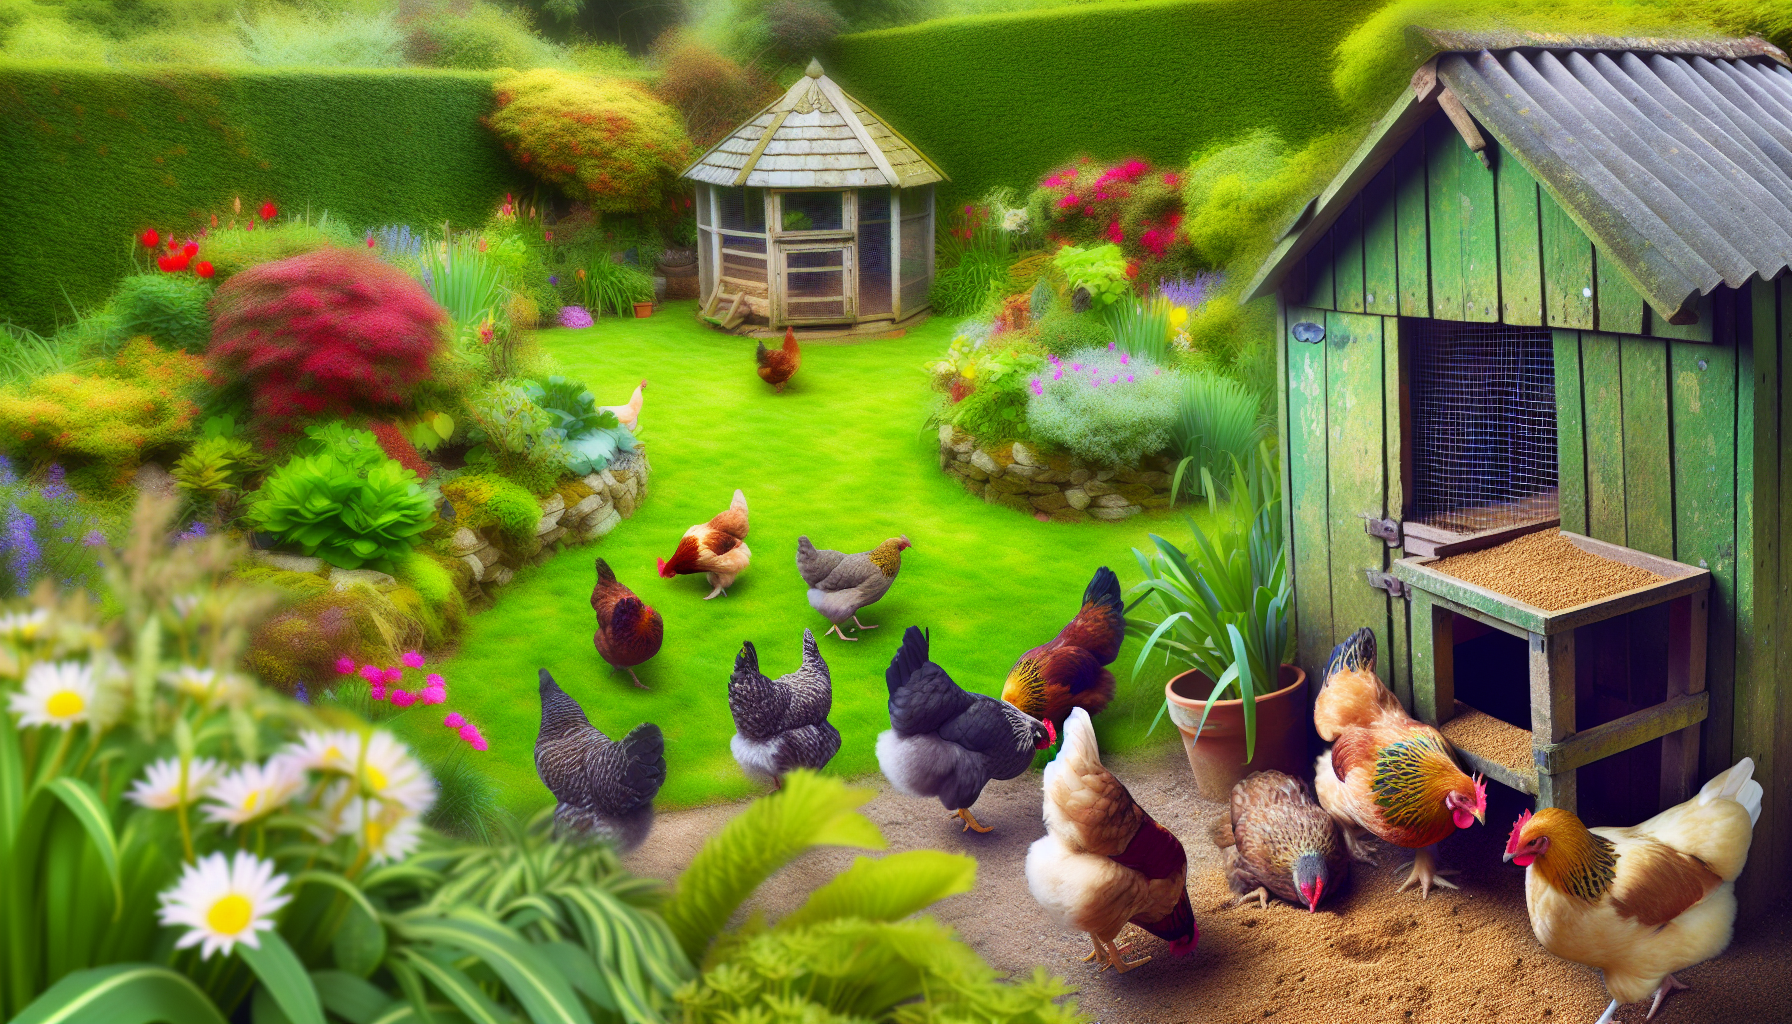 Boost din flok i baghaven: bedste tips til økologisk fodring af kyllinger